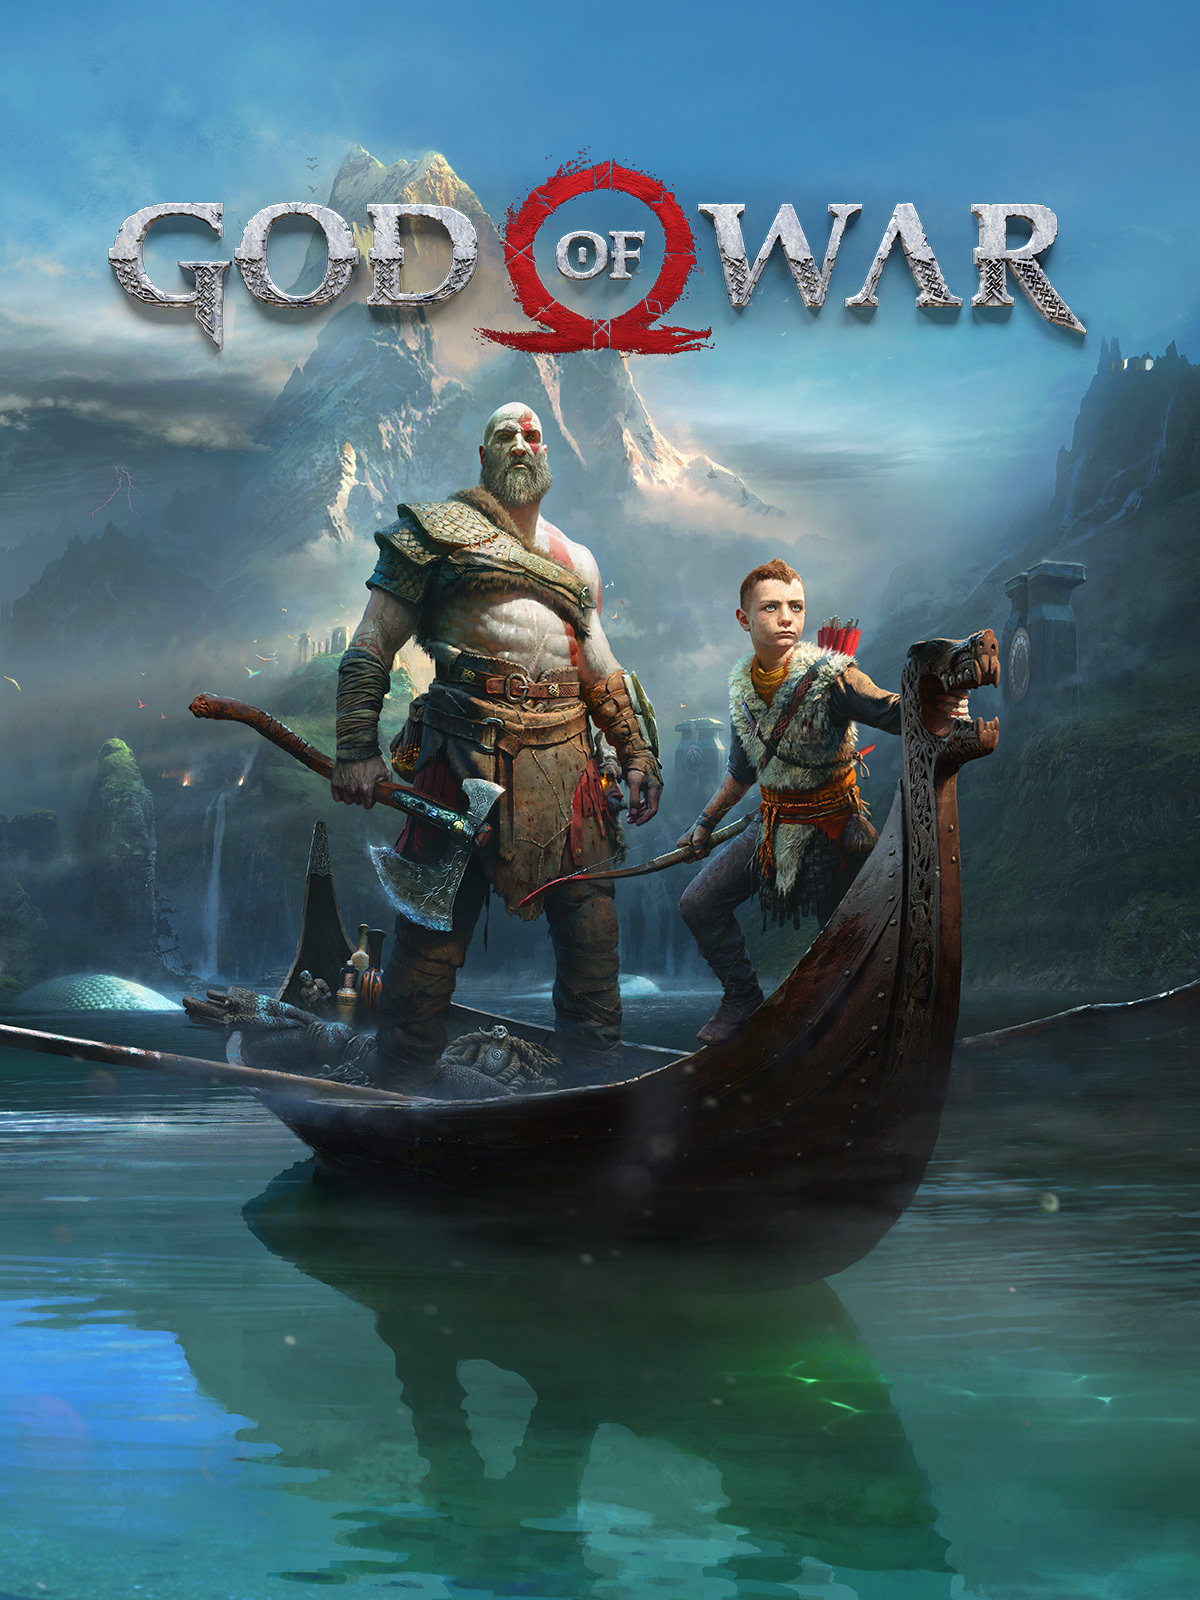 jaquette du jeu vidéo God of War